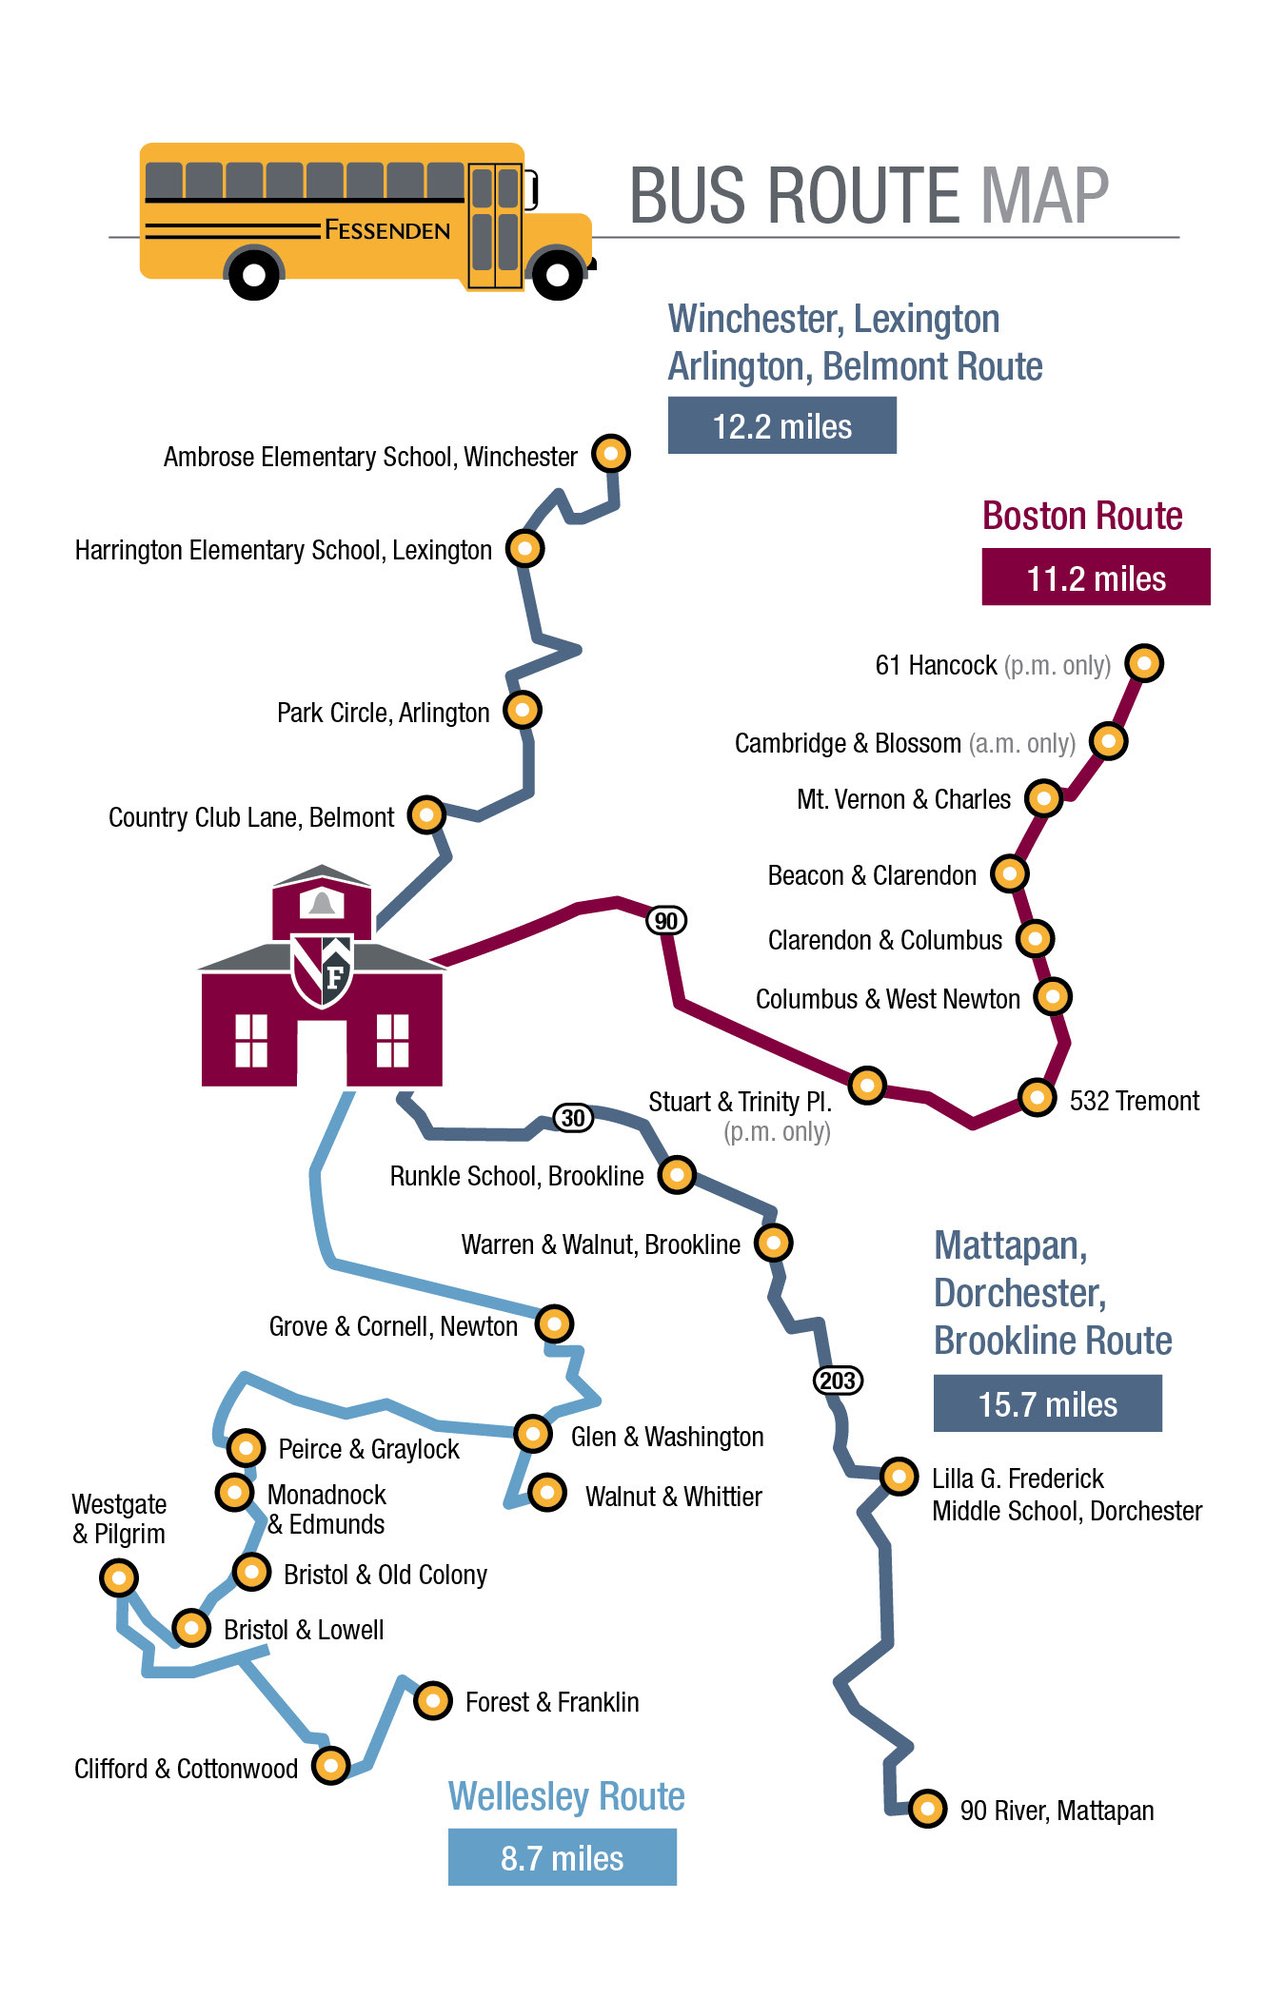 Fessenden Bus Route Map 